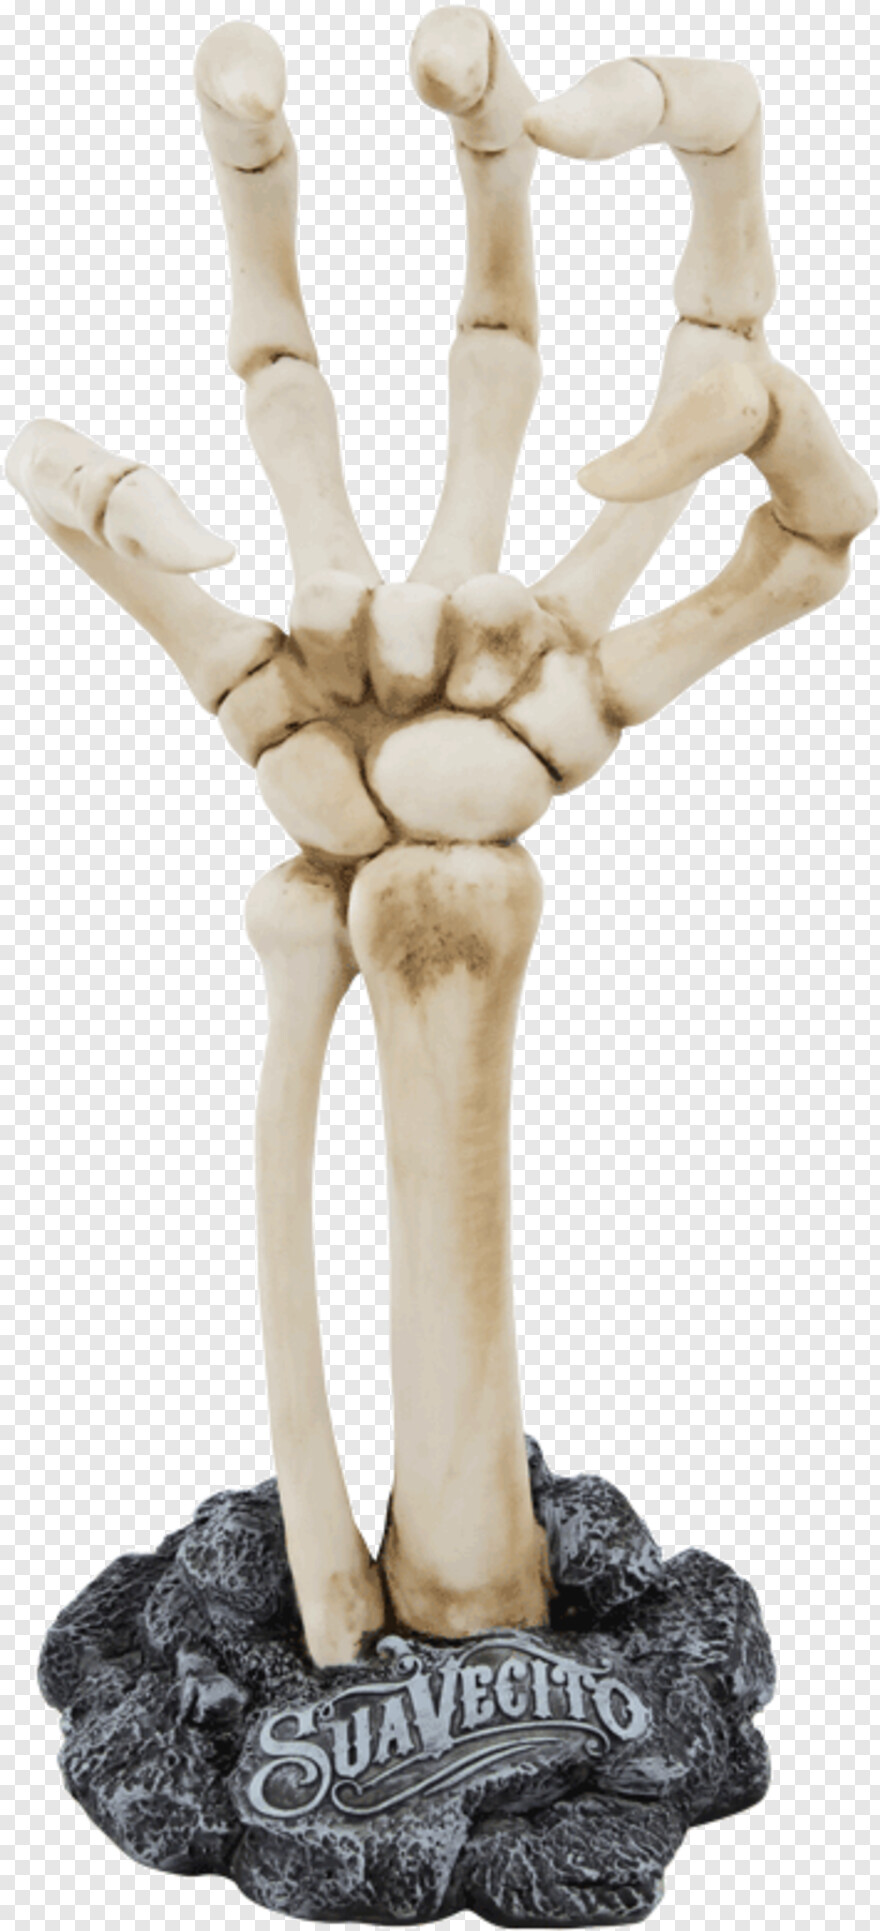  Skeleton Hand, Gun In Hand, Hand Pointing, Back Of Hand, Master Hand, Skeleton